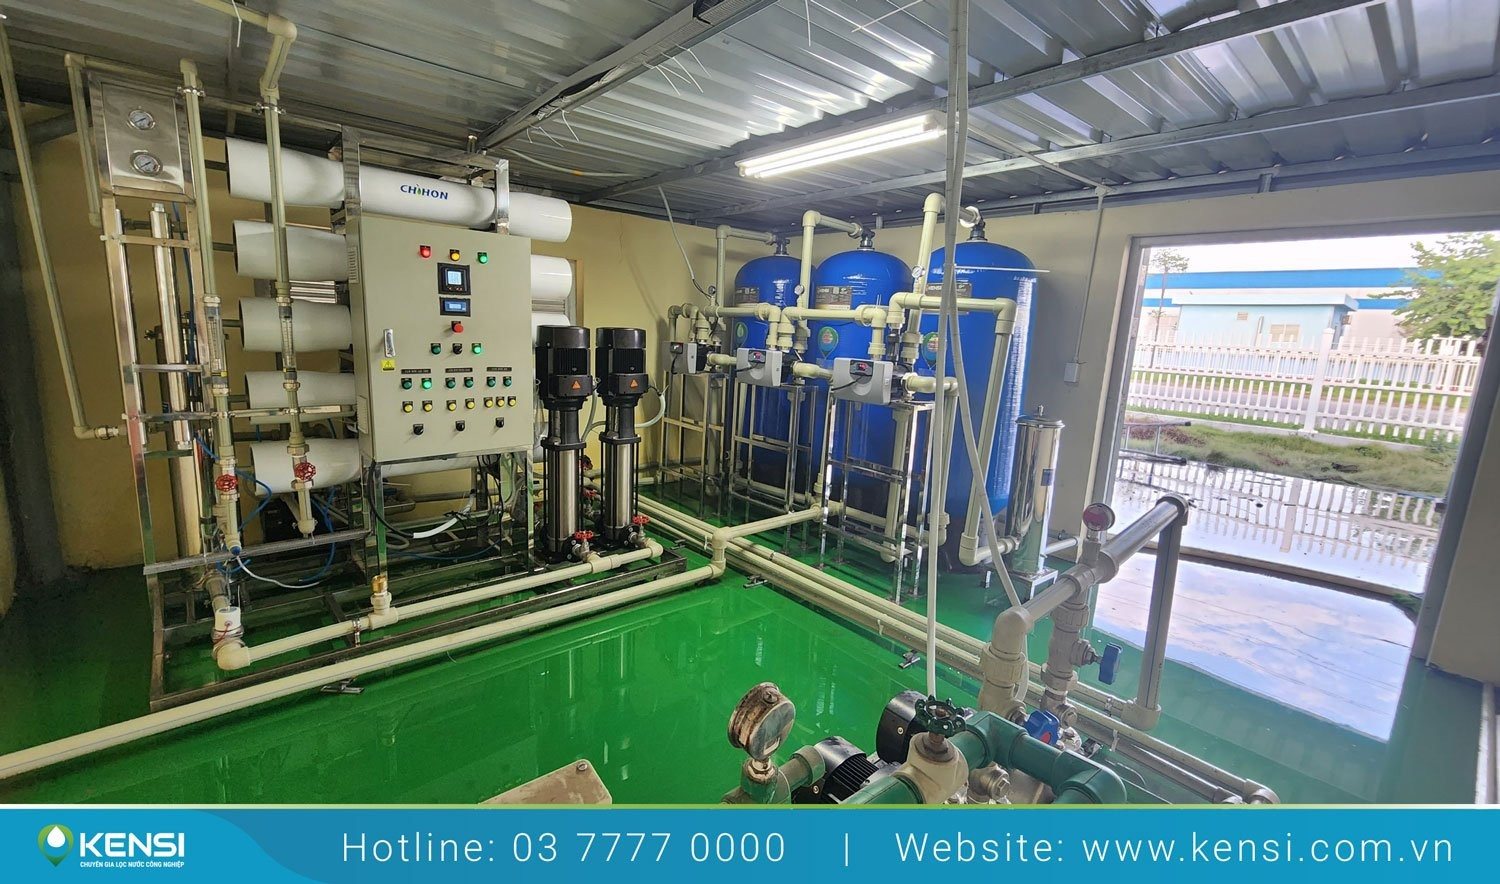 Tekcom lắp đặt hệ thống lọc nước RO công nghiệp 5m3/h tại Bắc Giang